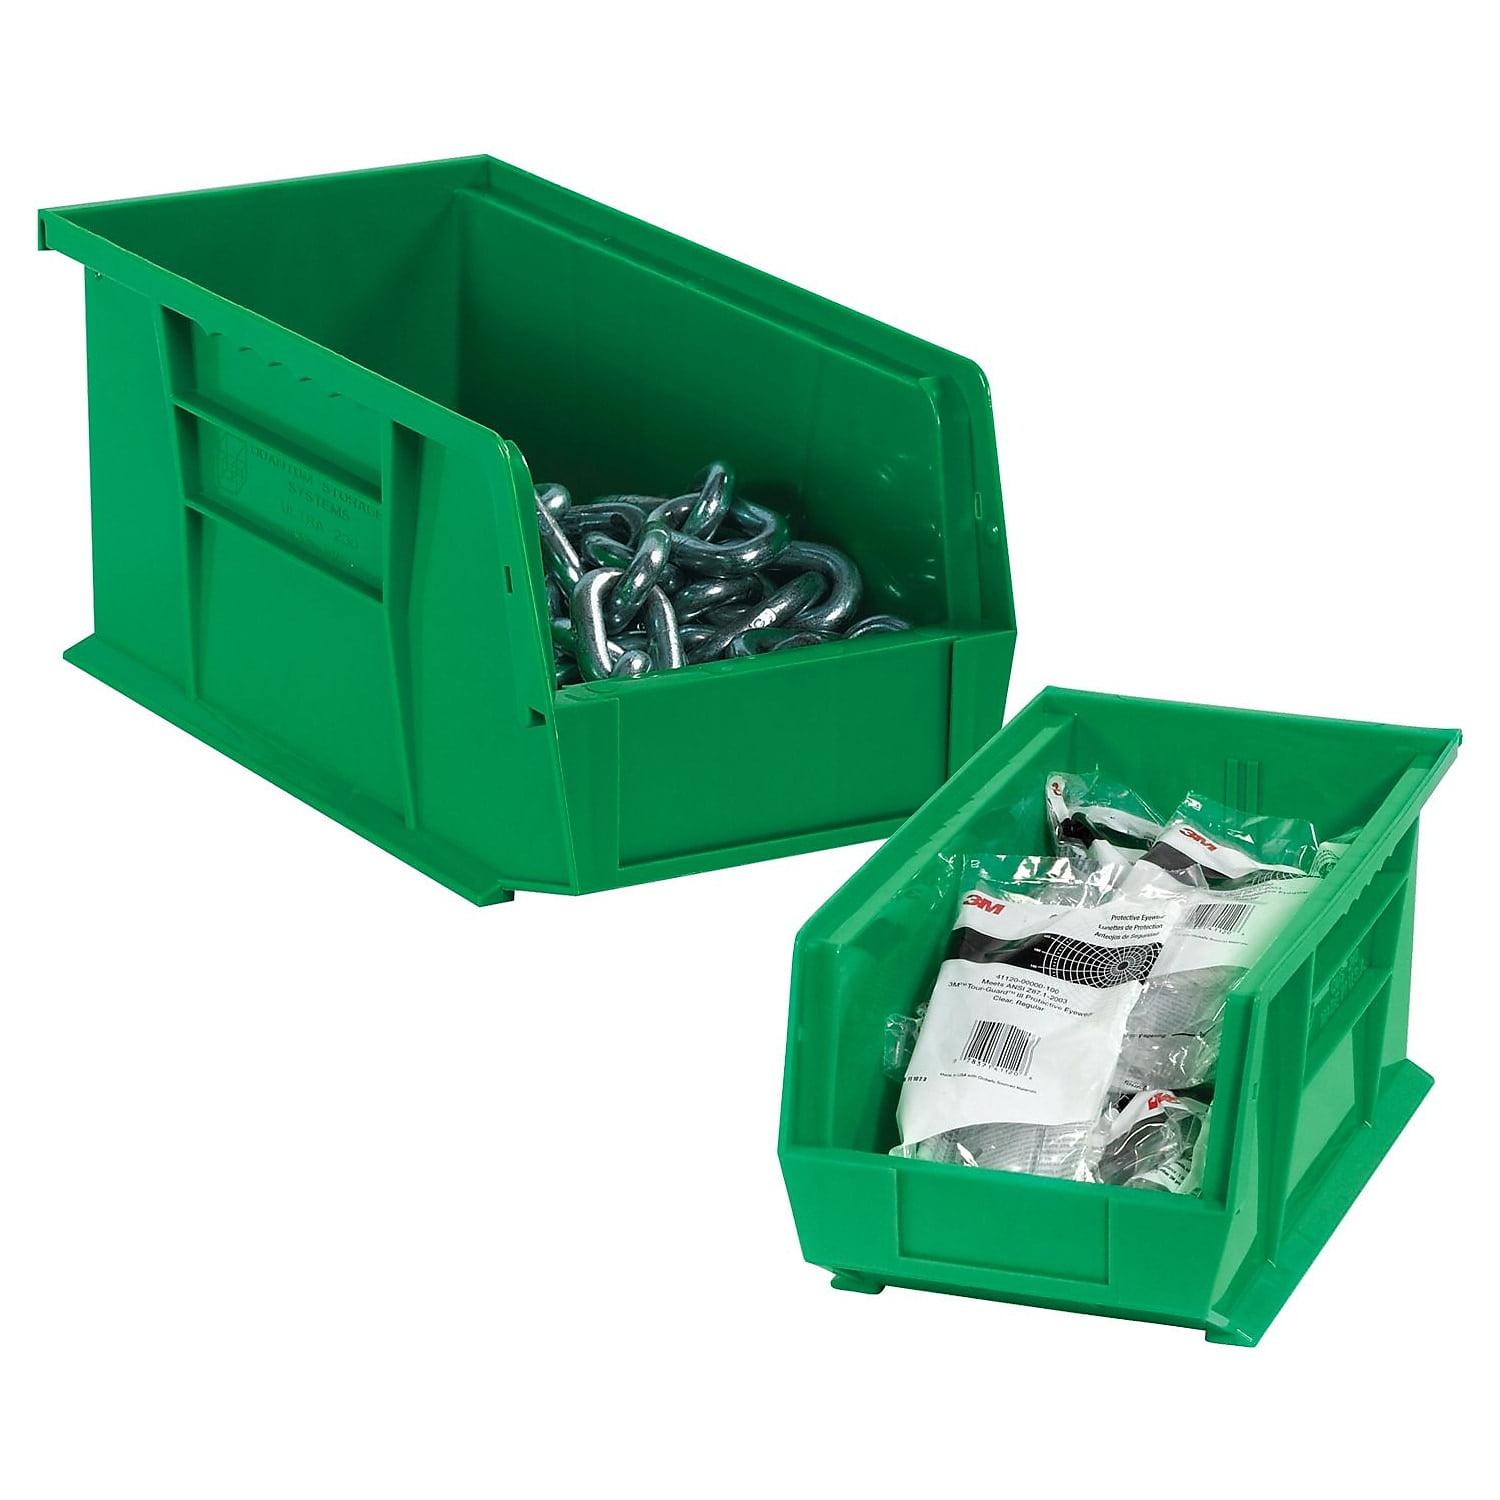 5 3/8 x 4 1/8 x 3 Aviditi Plastic Stack & Hang Bin Boxes BINP0543R Pack of 24 